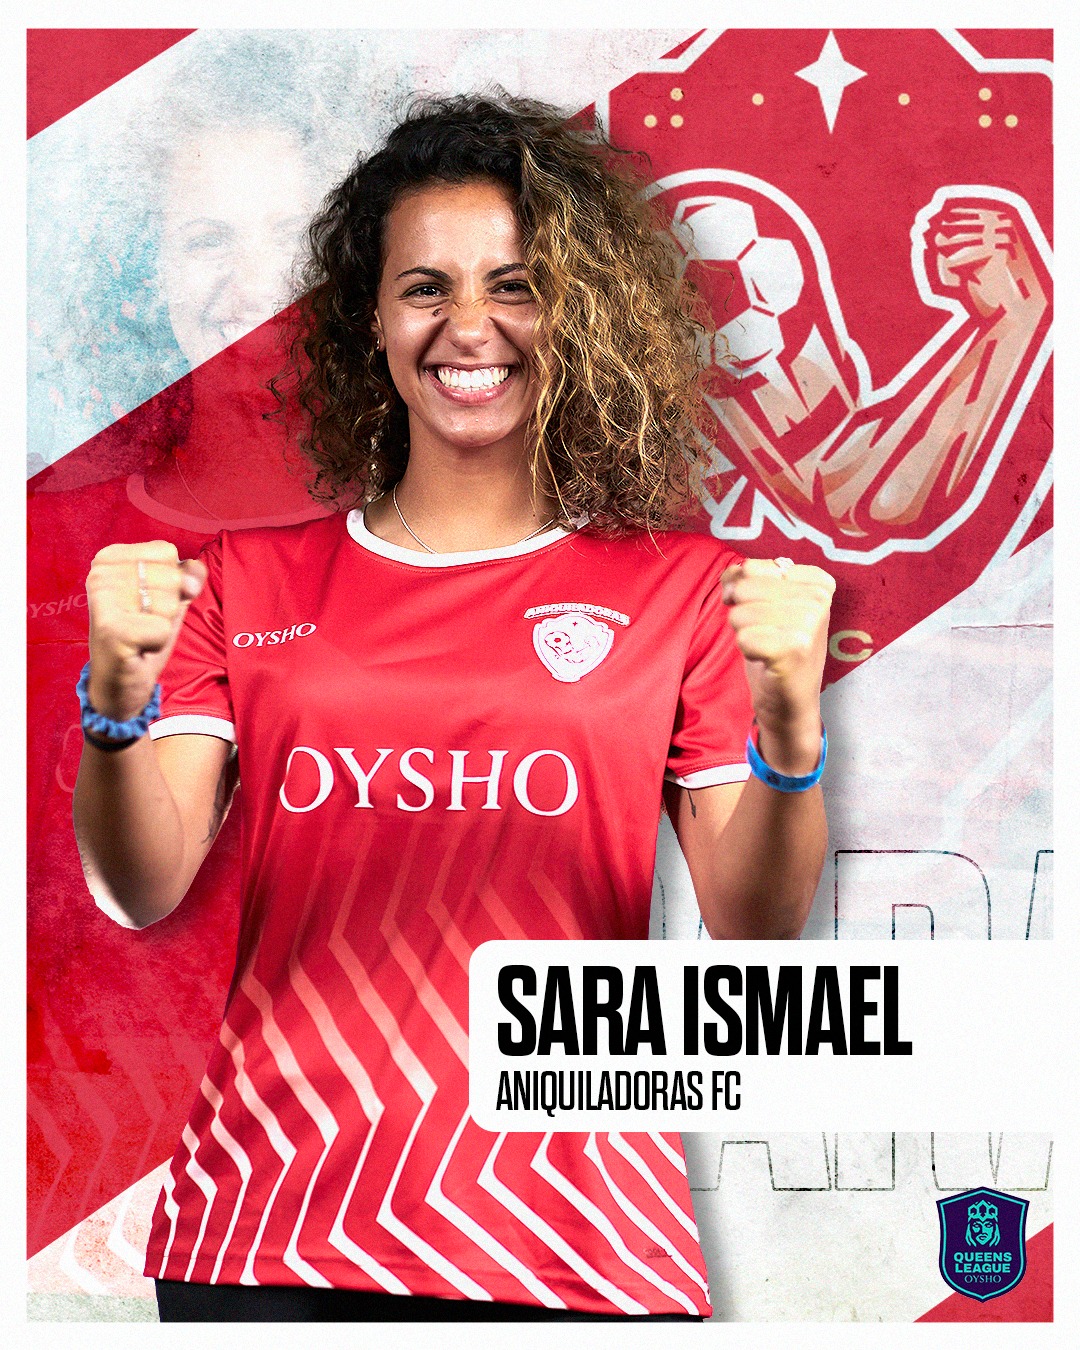 Sara Ismael, el primer pick de Aniquiladoras en el draft